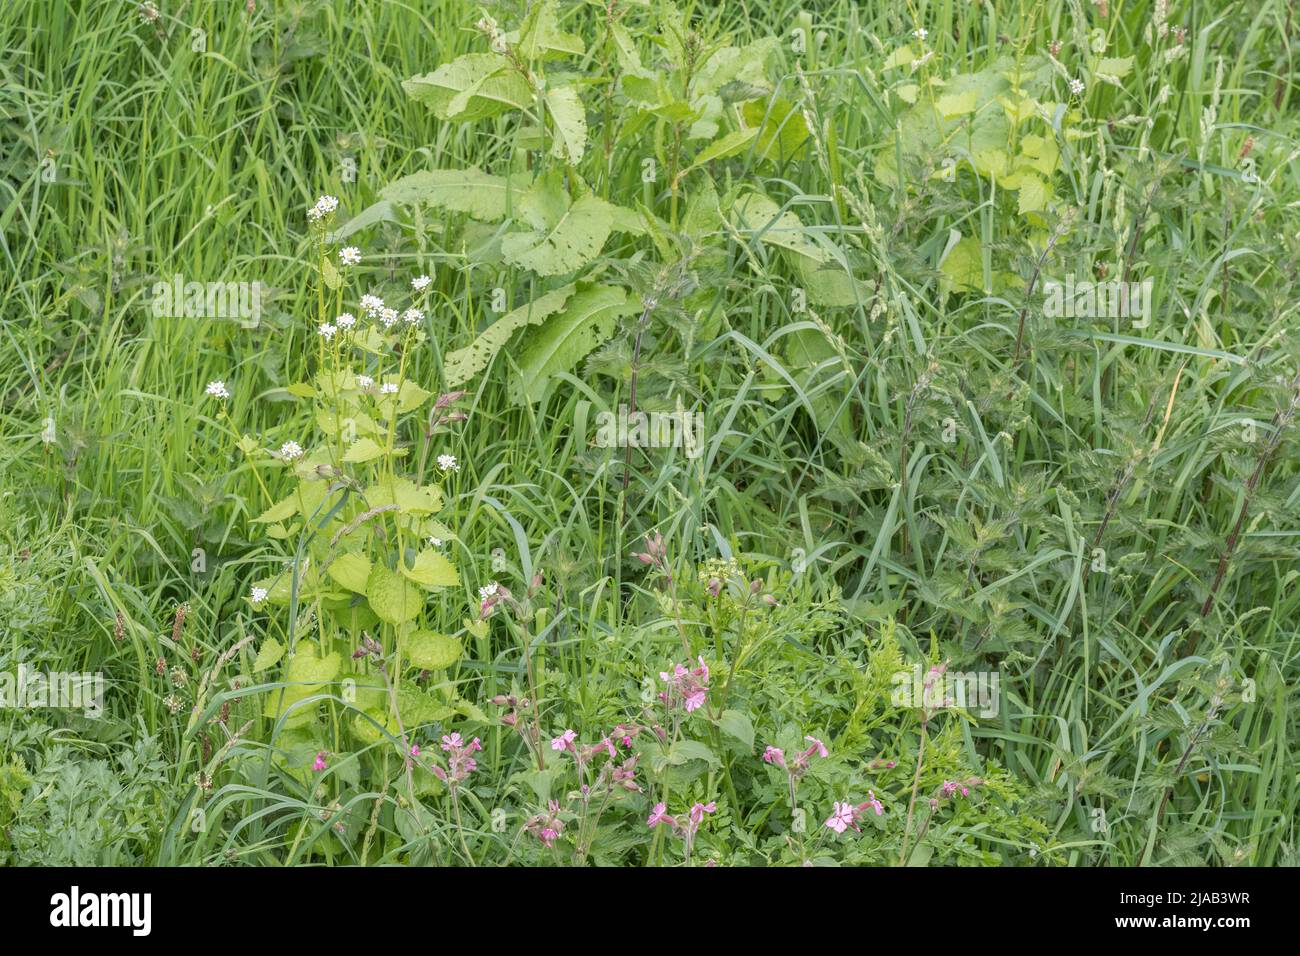 Blätter / Laub und weiße Blüten von Heckenbarsch / Jack-by-the-Hecke / Alliaria petiolata im Grasrand. H/G ist eine weit verbreitete essbare Wildpflanze. Stockfoto